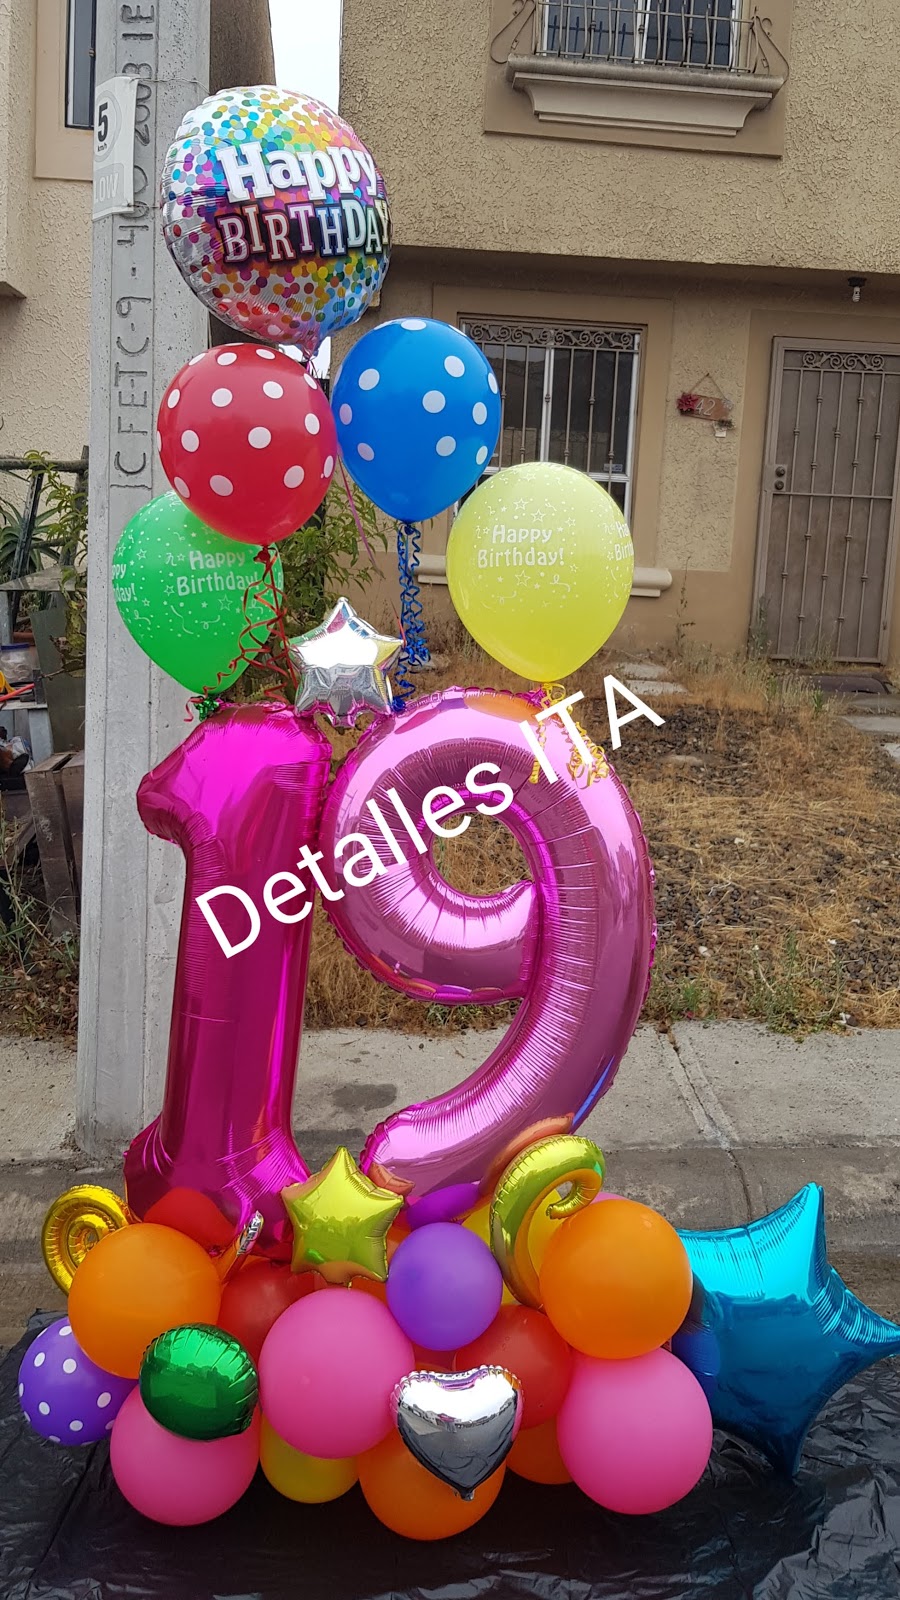 Tienda de Regalos y Papelería Detalles ITA & Zipitias | Blvd. Sta. Fe 6132, Santa Fe 3ra. Seccion, 22654 Tijuana, B.C., Mexico | Phone: 664 905 5804